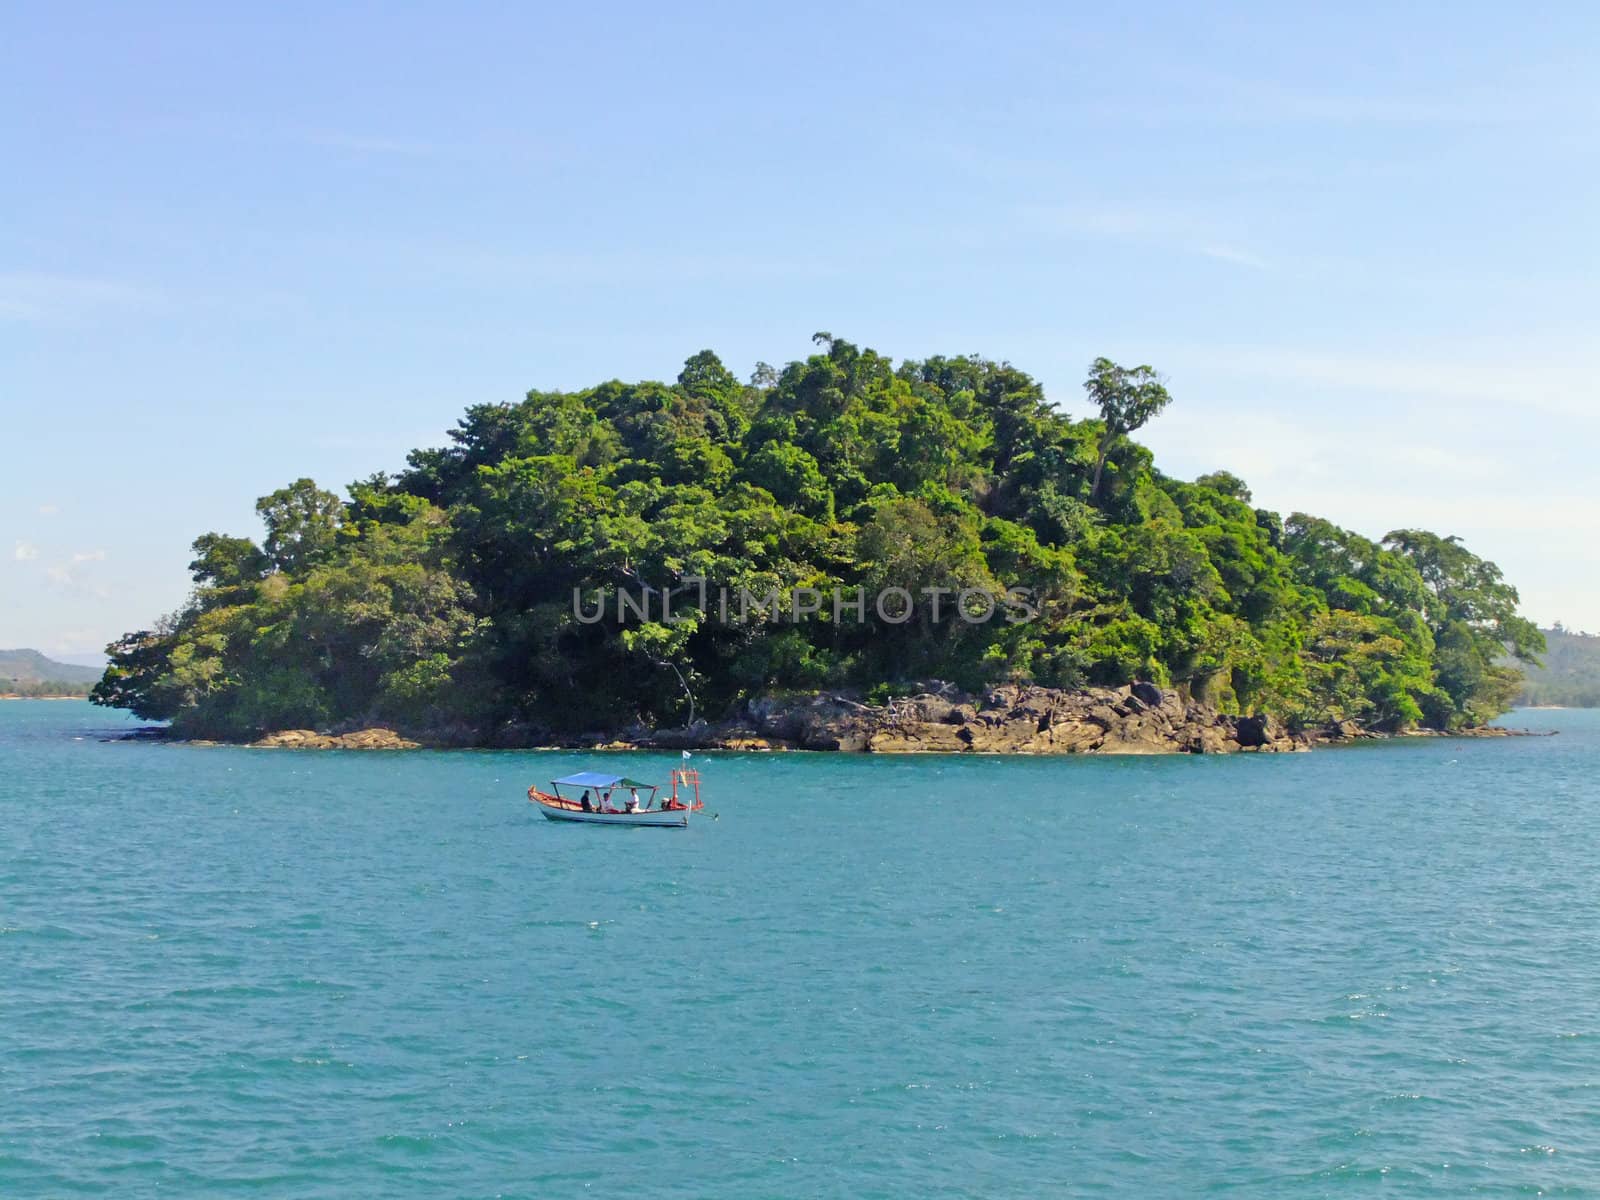 Small island off the coast of Sihanoukville, Cambodia, Southeast Asia